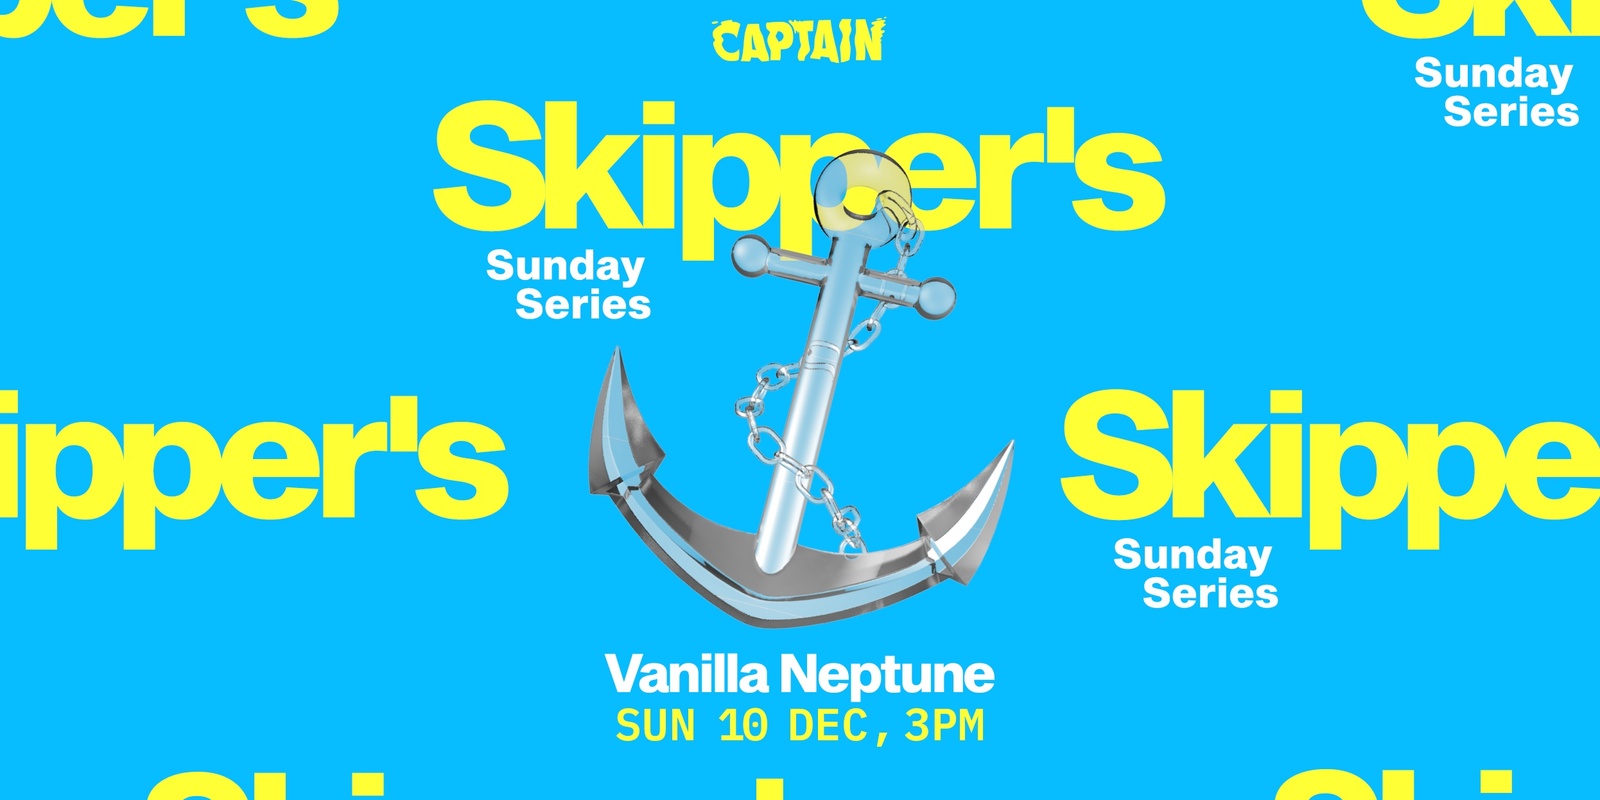 Banner image for Skipper's Sunday Series ▬ Vanilla Neptune